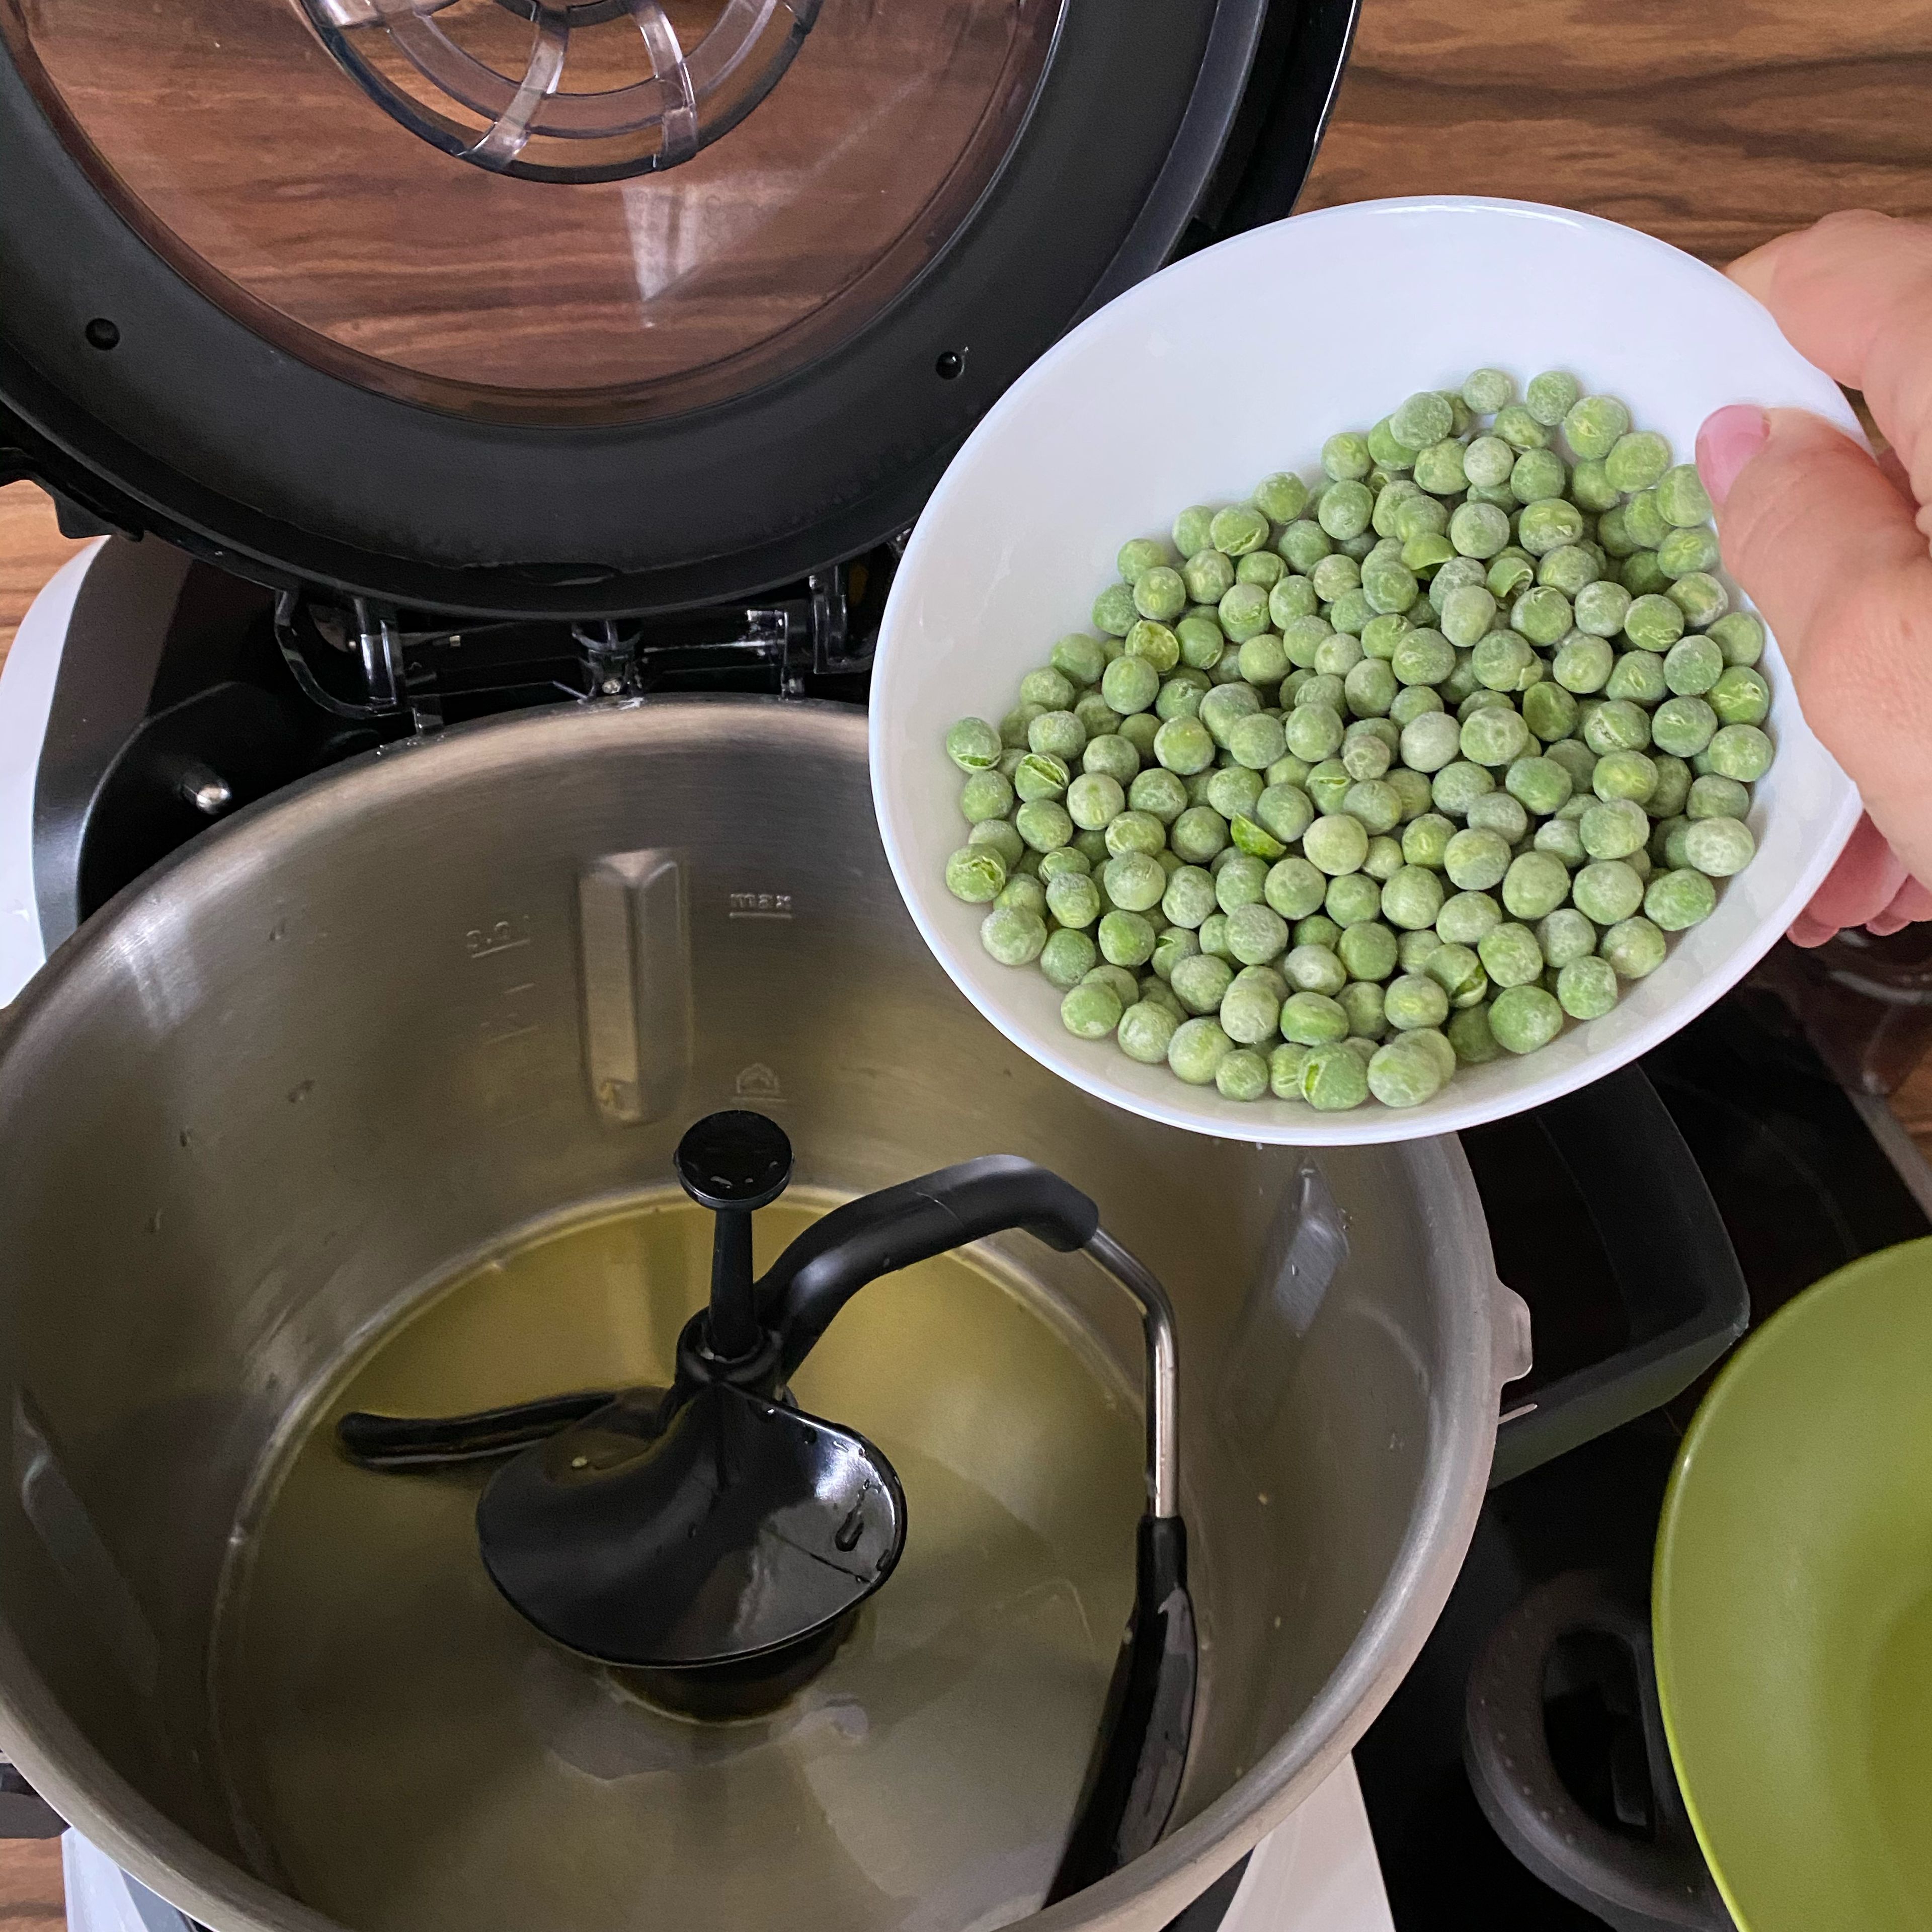 Das Olivenöl einwiegen, Öl bei offenem Deckel erhitzen, 120 Grad/ 2min.
Cookit 3D-Rührer einsetze, Erbsen dazu einwiegen und andünsten,Stufe 4/ 120 Grad/1 min.